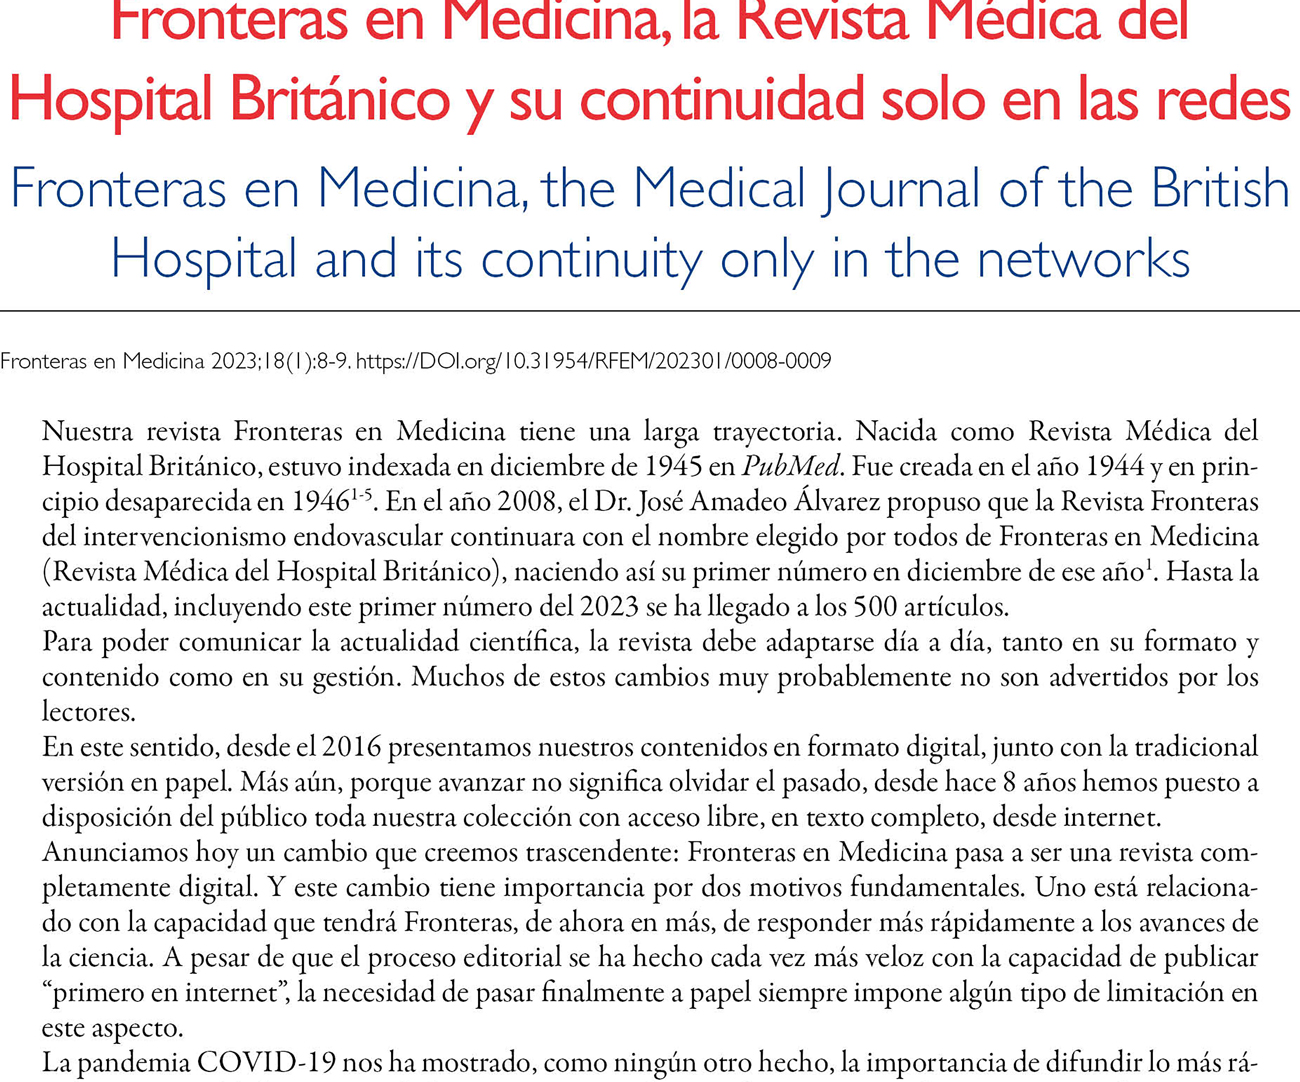 Fronteras en Medicina, la Revista Médica del Hospital Británico y su continuidad solo en las redes